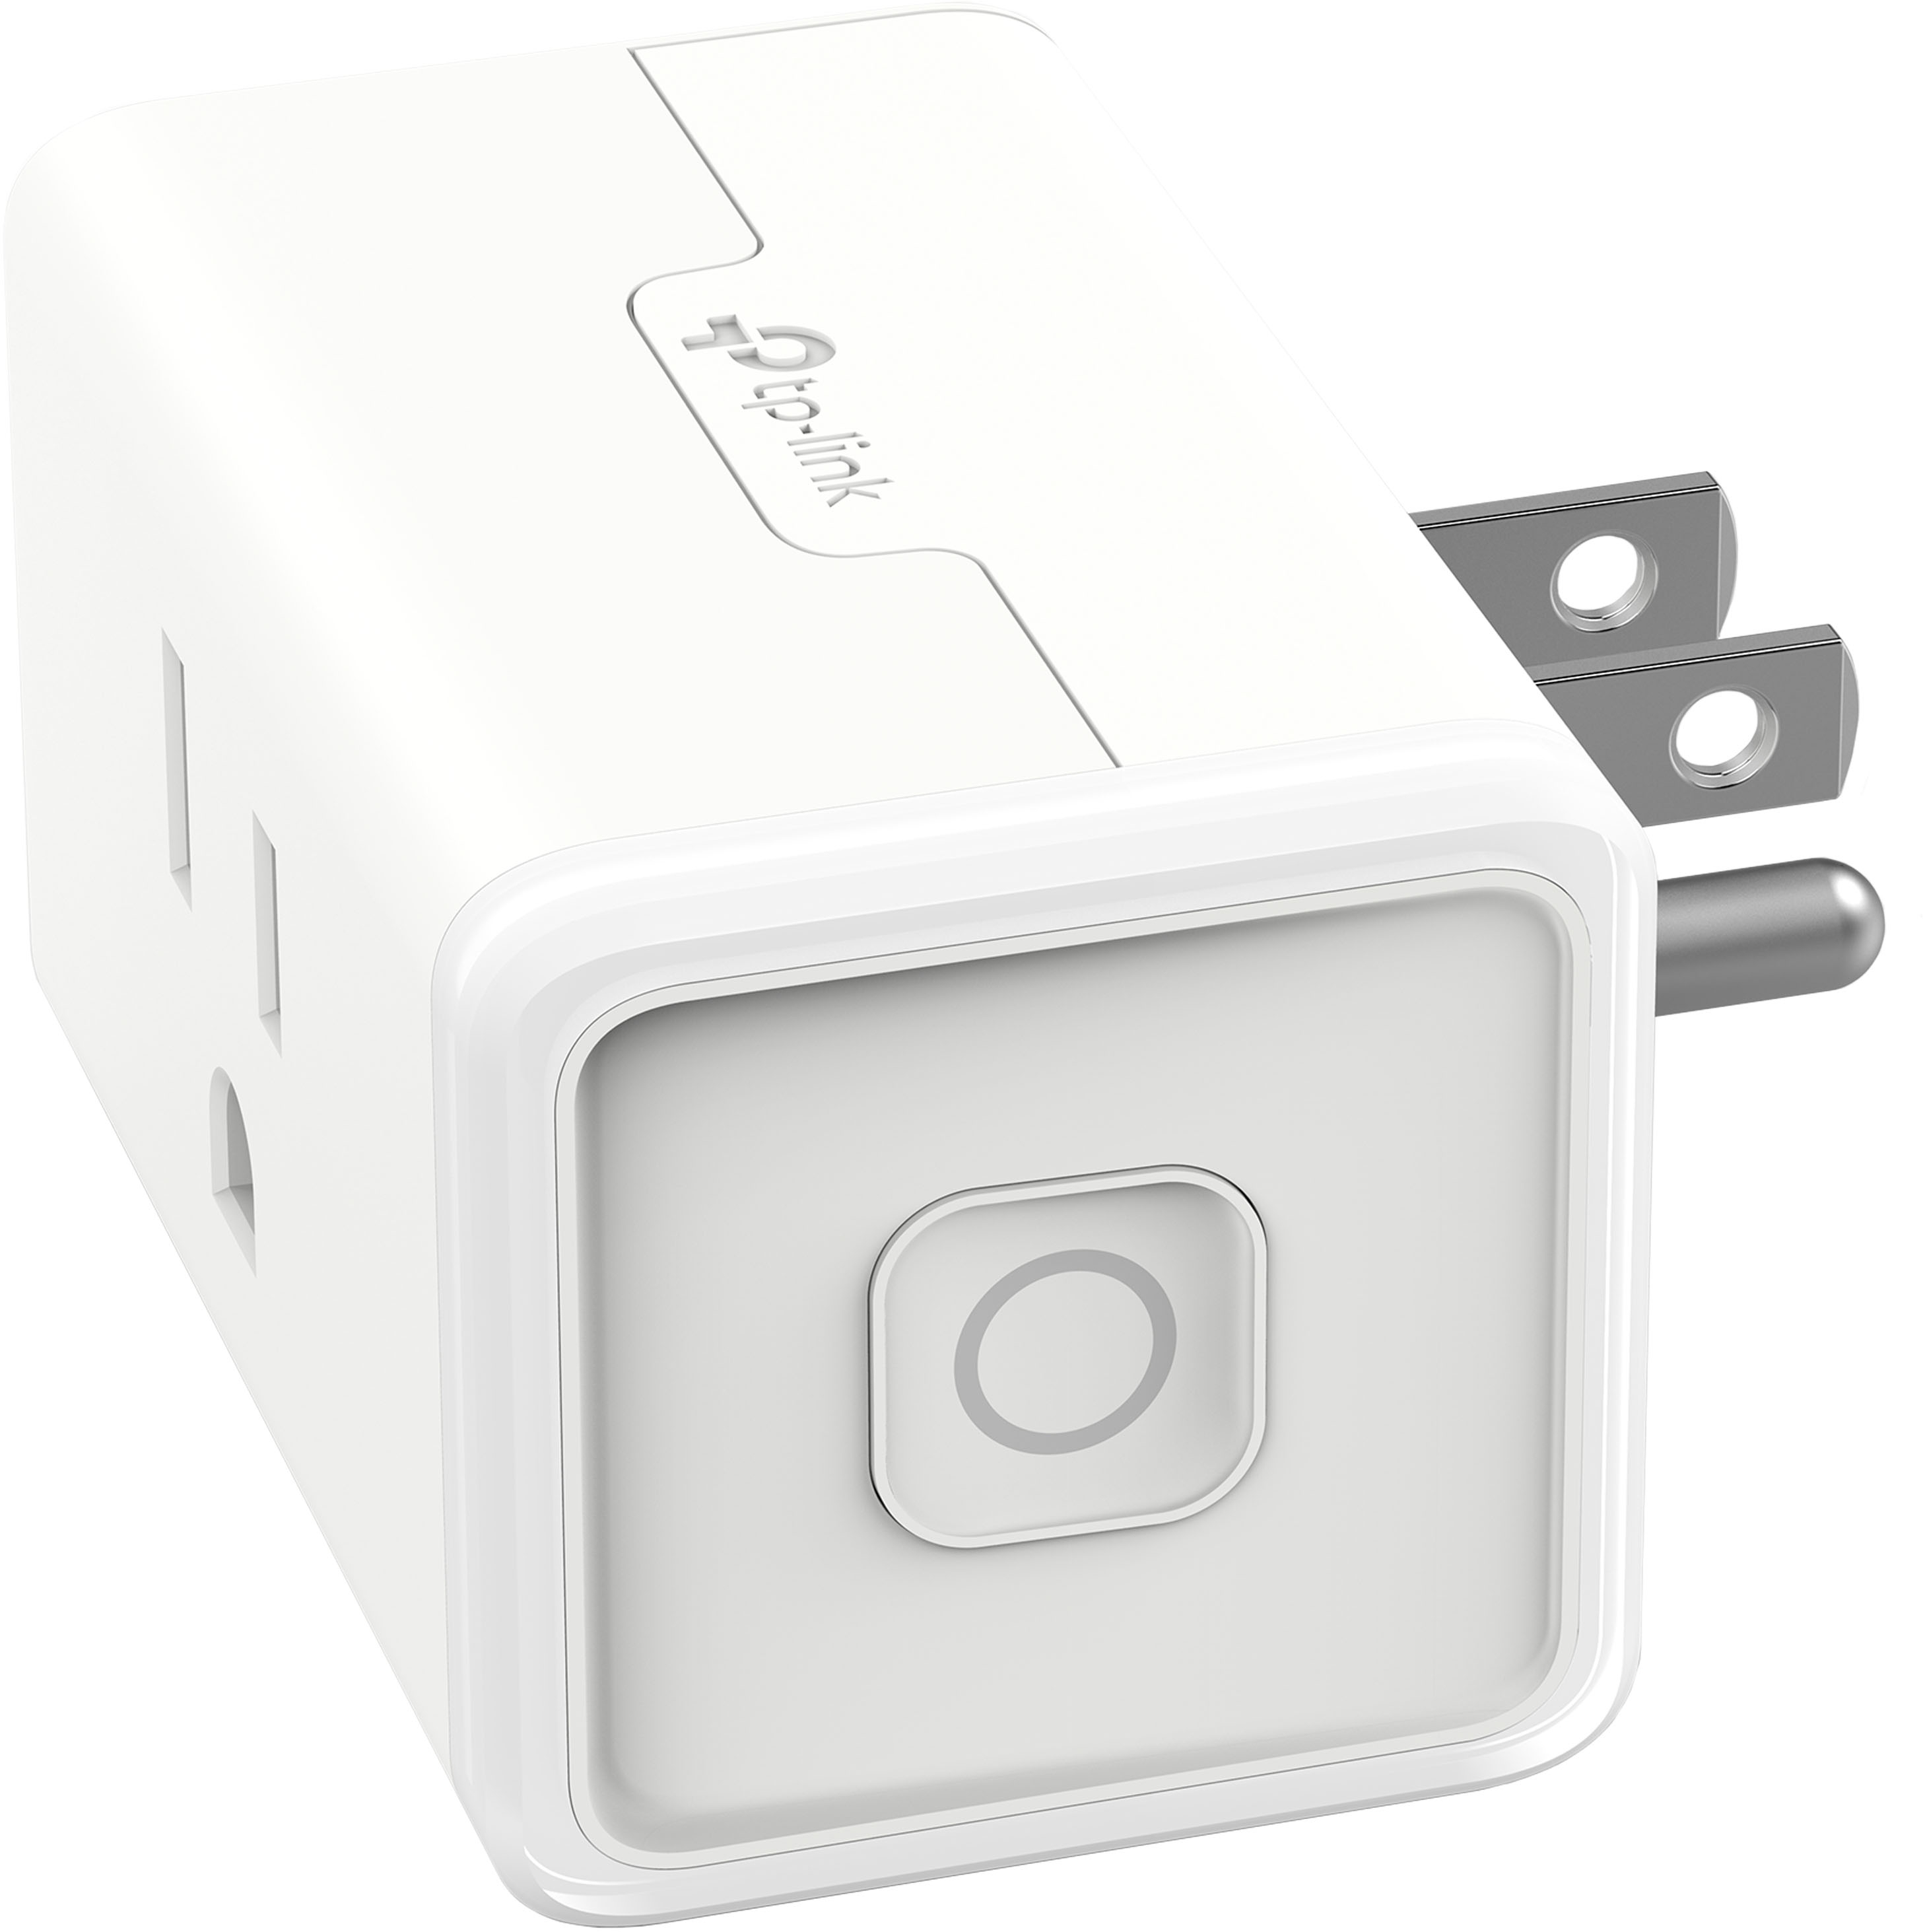 TP-Link, Kasa Smart Home, 2-Outlet Smart Outdoor Plug, Black